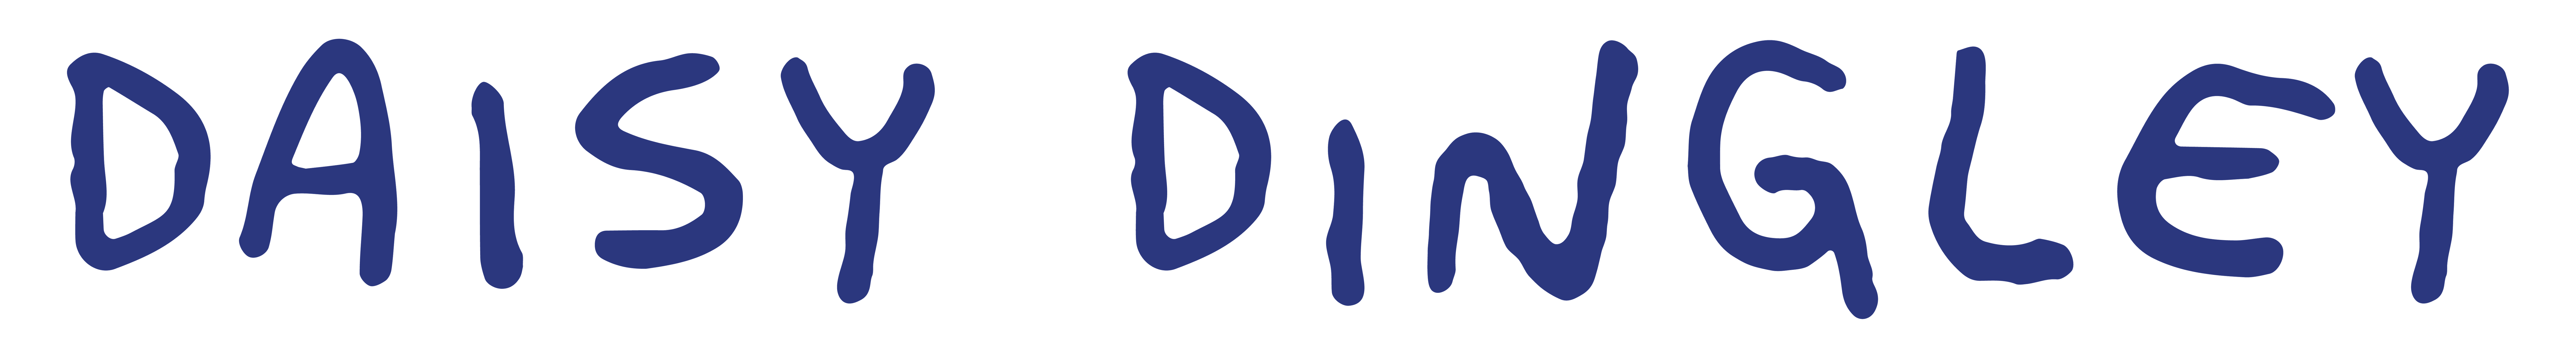 DAISY-DINGLEY-2